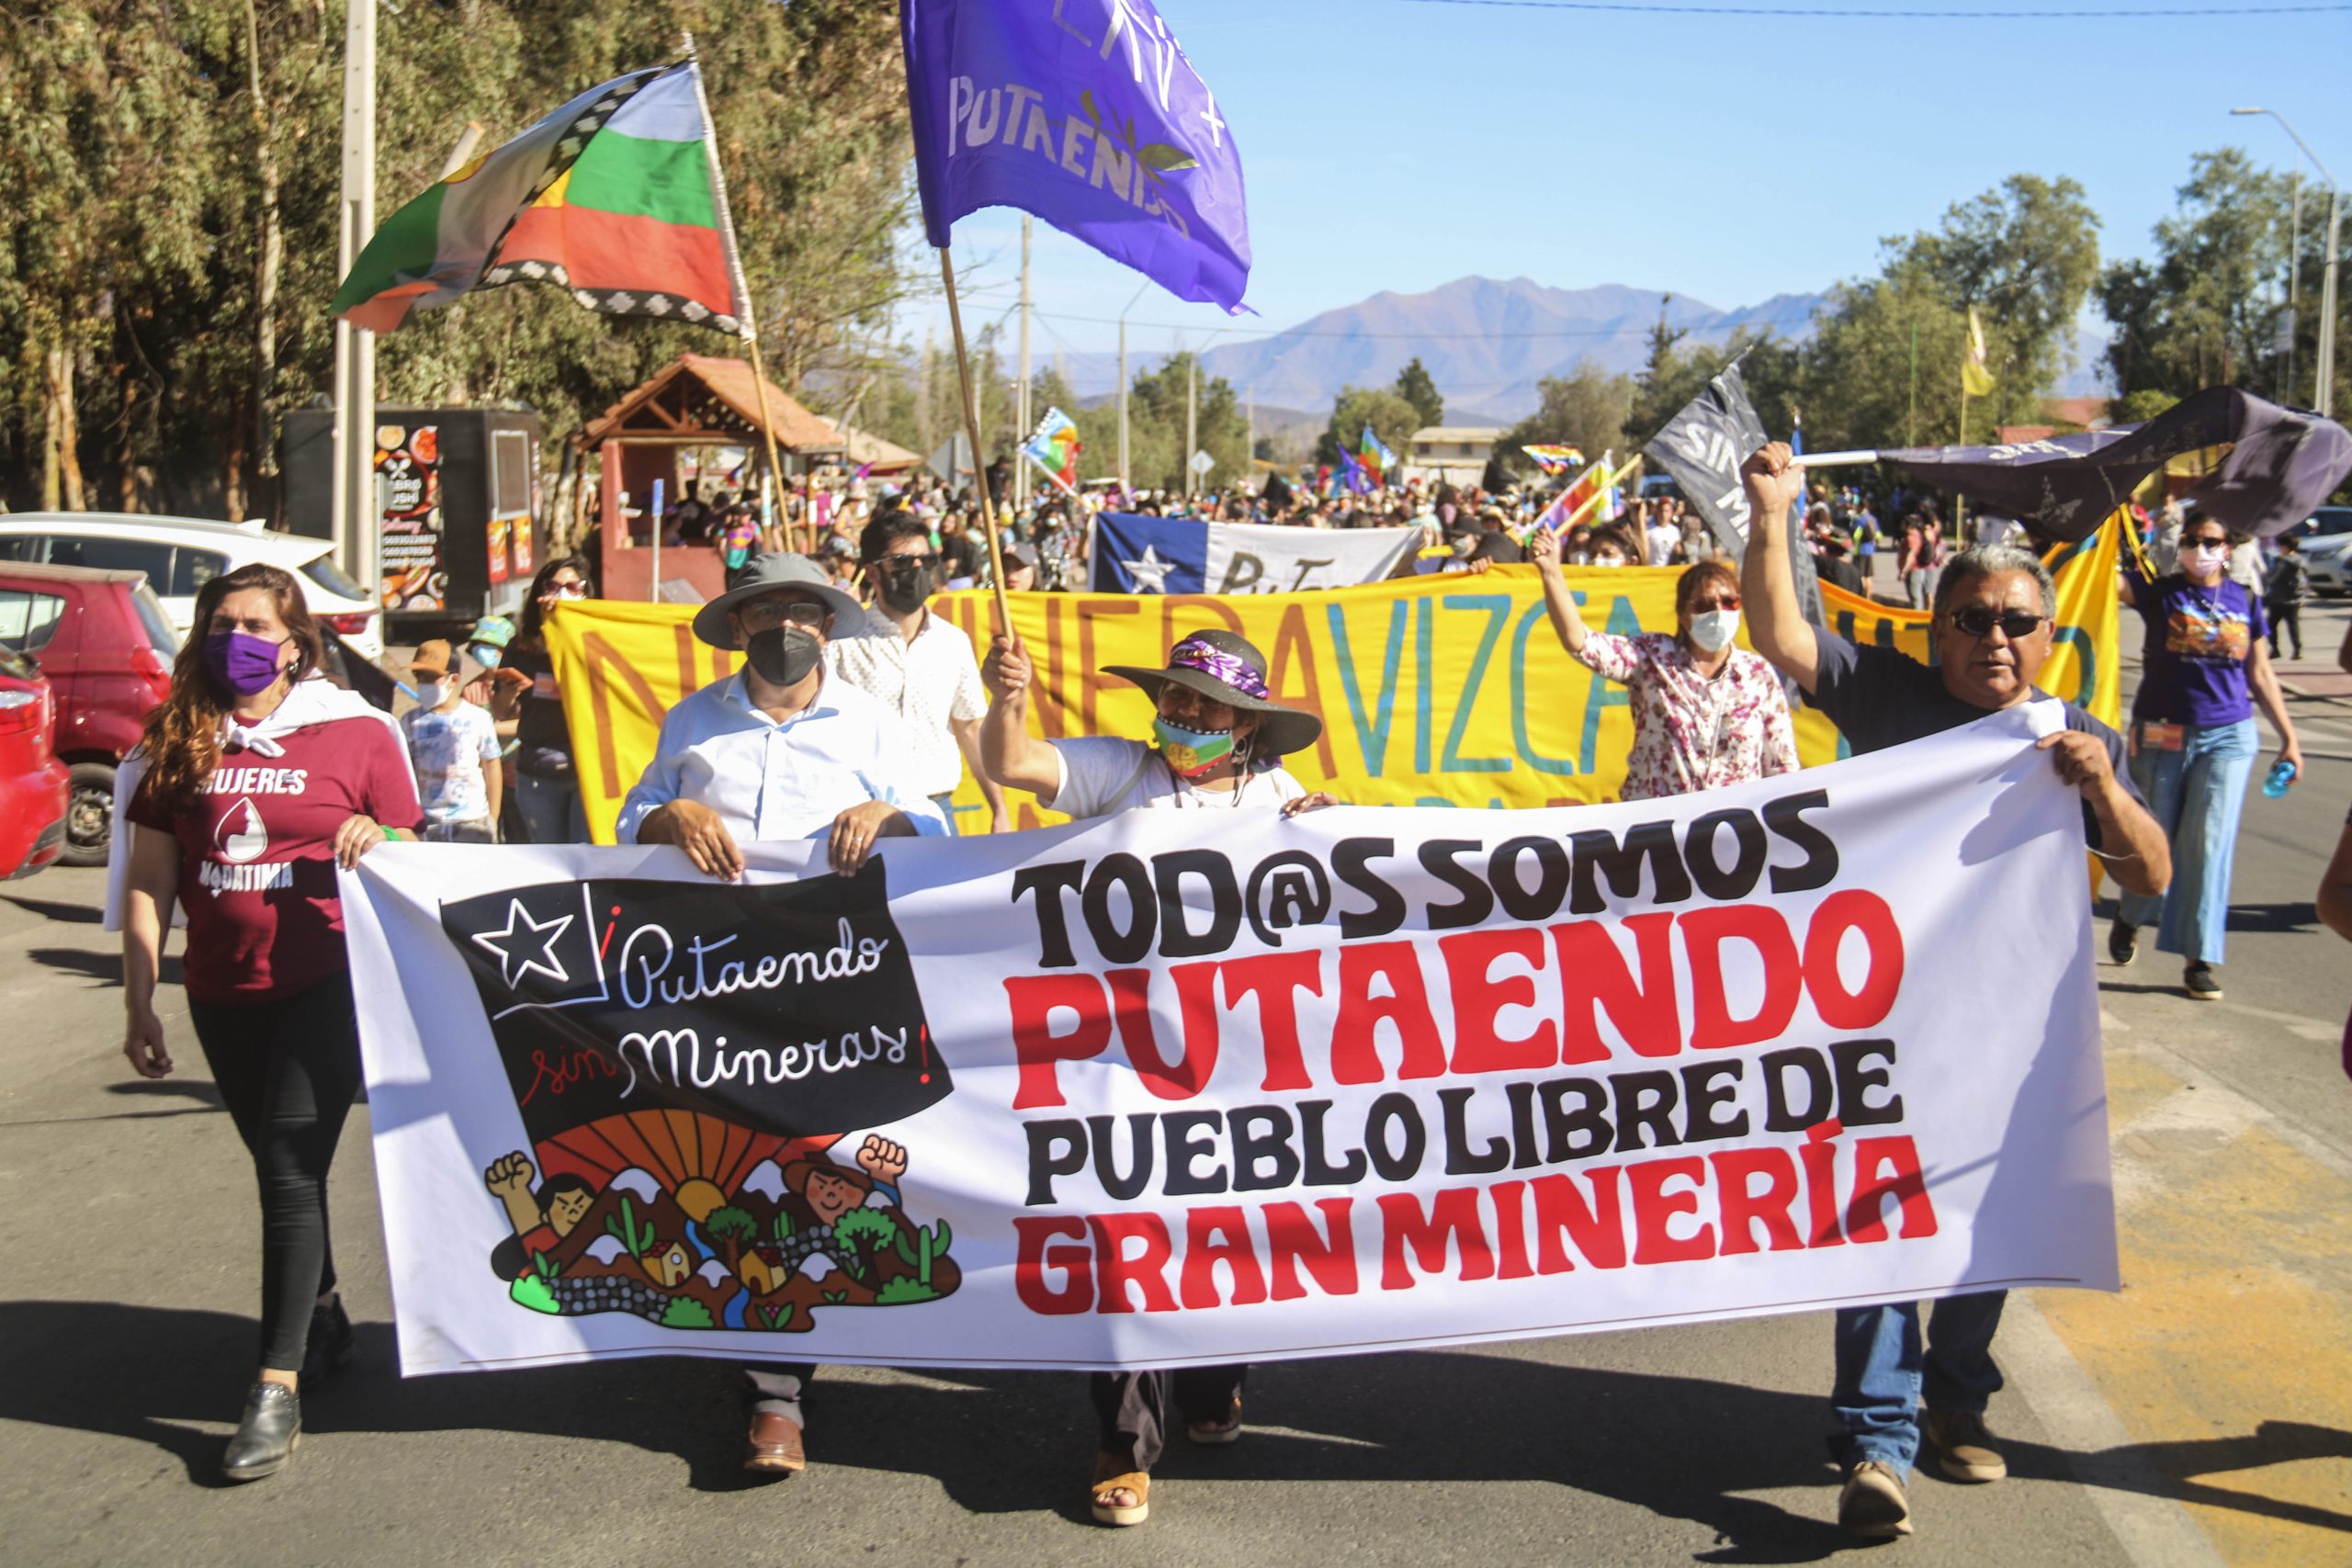 PUTAENDO: “Tercera Marcha por la Vida” que convocó a más de dos mil personas, que dijeron fuerte y claro: ¡No a la gran minería!